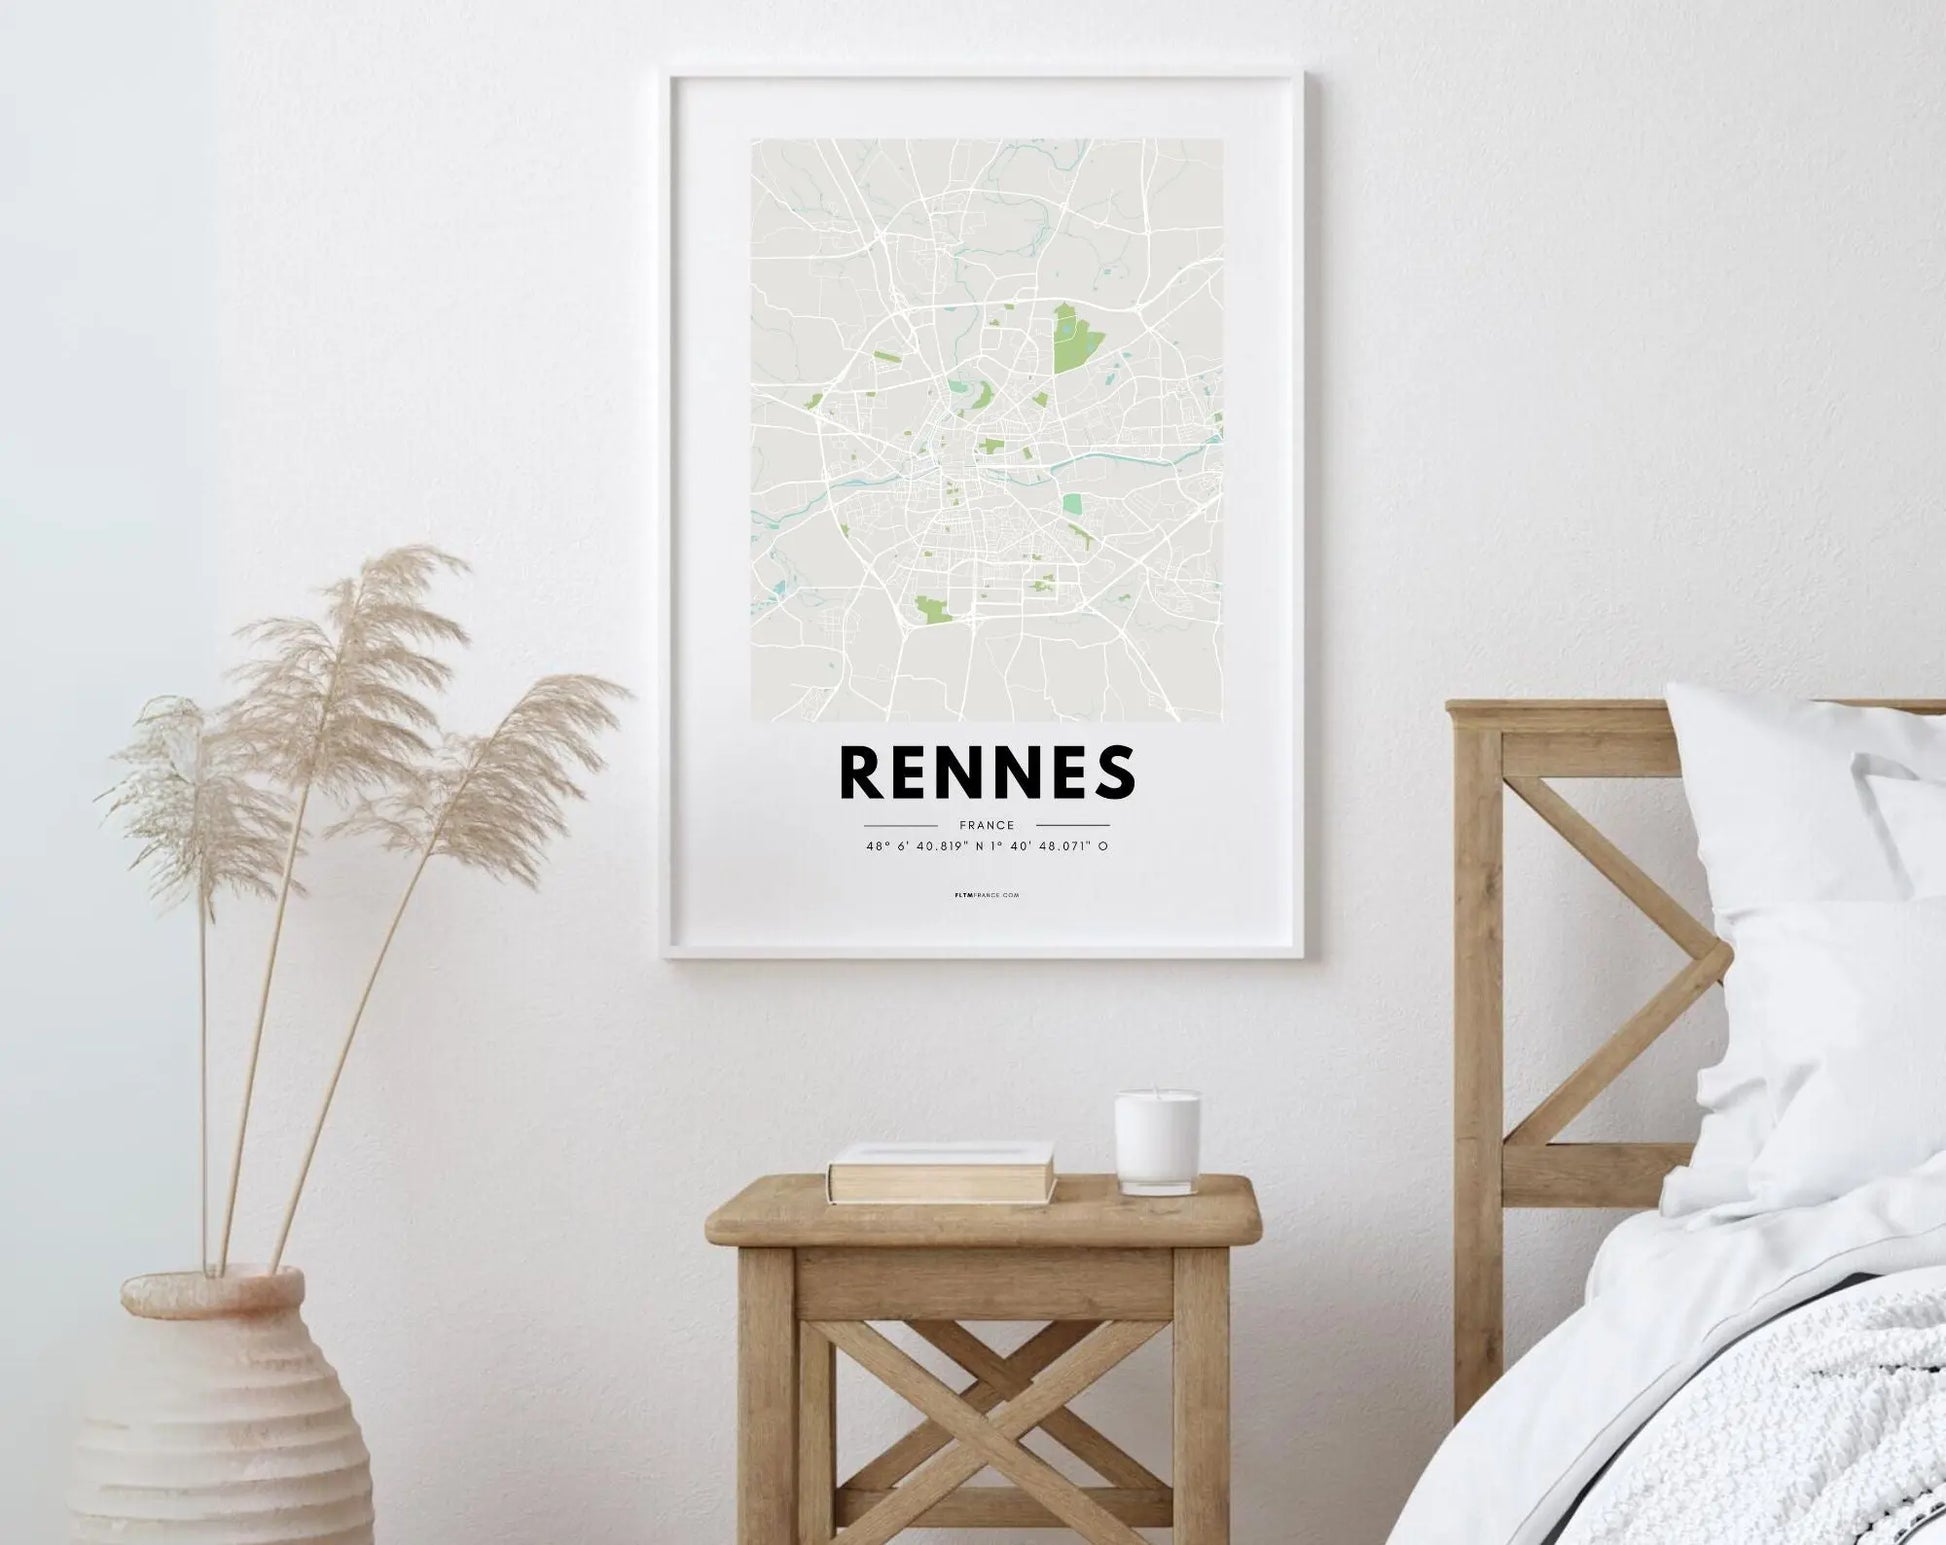 Affiche carte Rennes - Villes de France FLTMfrance